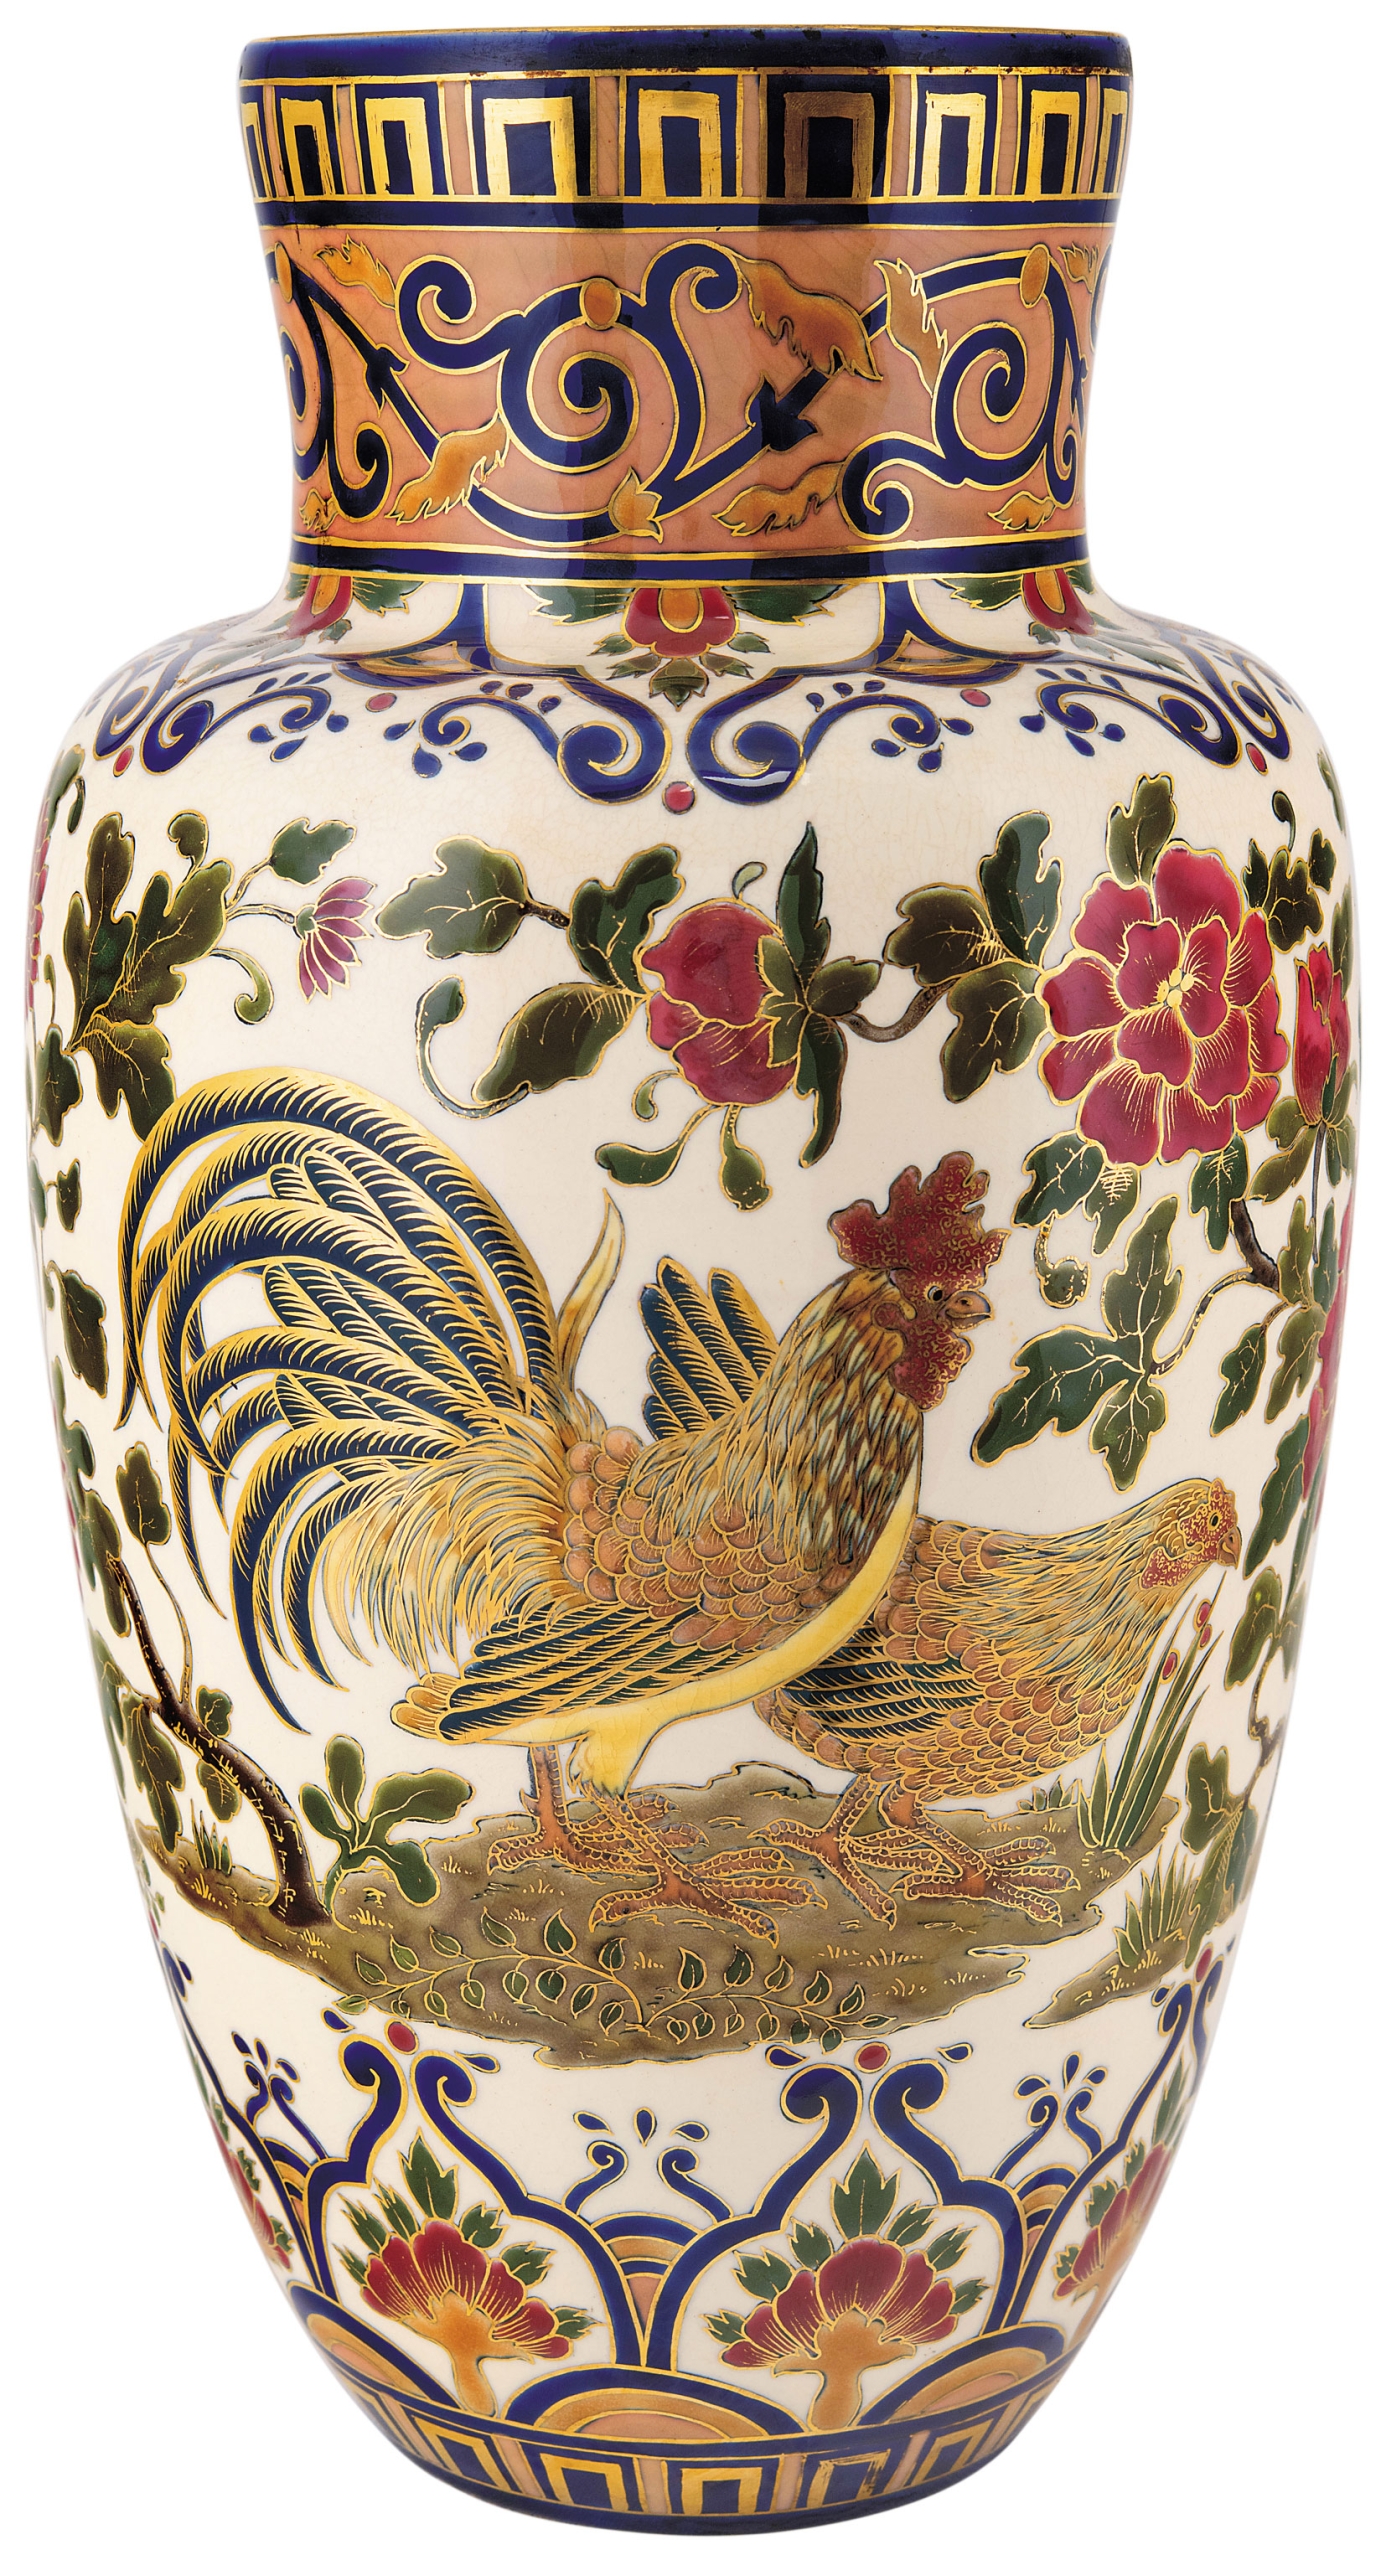 Zsolnay Chinoiserie Vase, 1878-1879